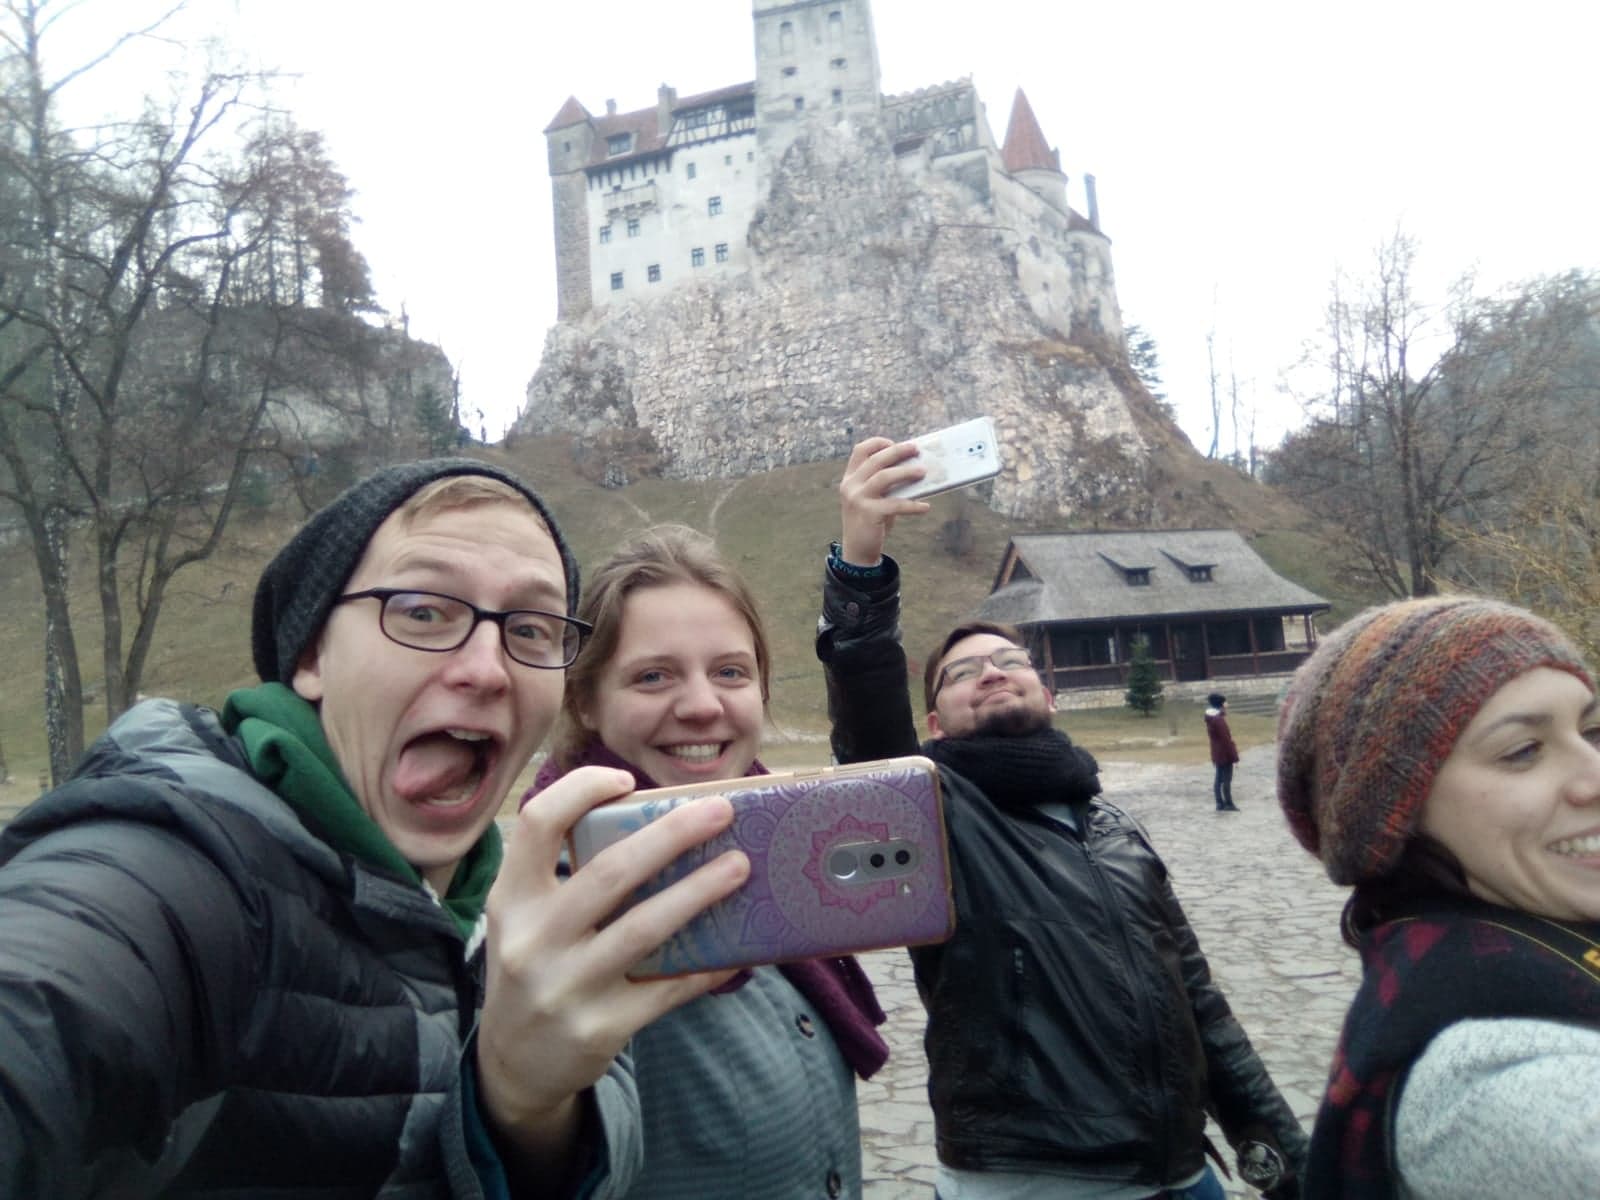 Eine Gruppe Studierender albert rum und schiesst Selfies. Im Hintergrund ist eine alte Steinburg zu sehen.